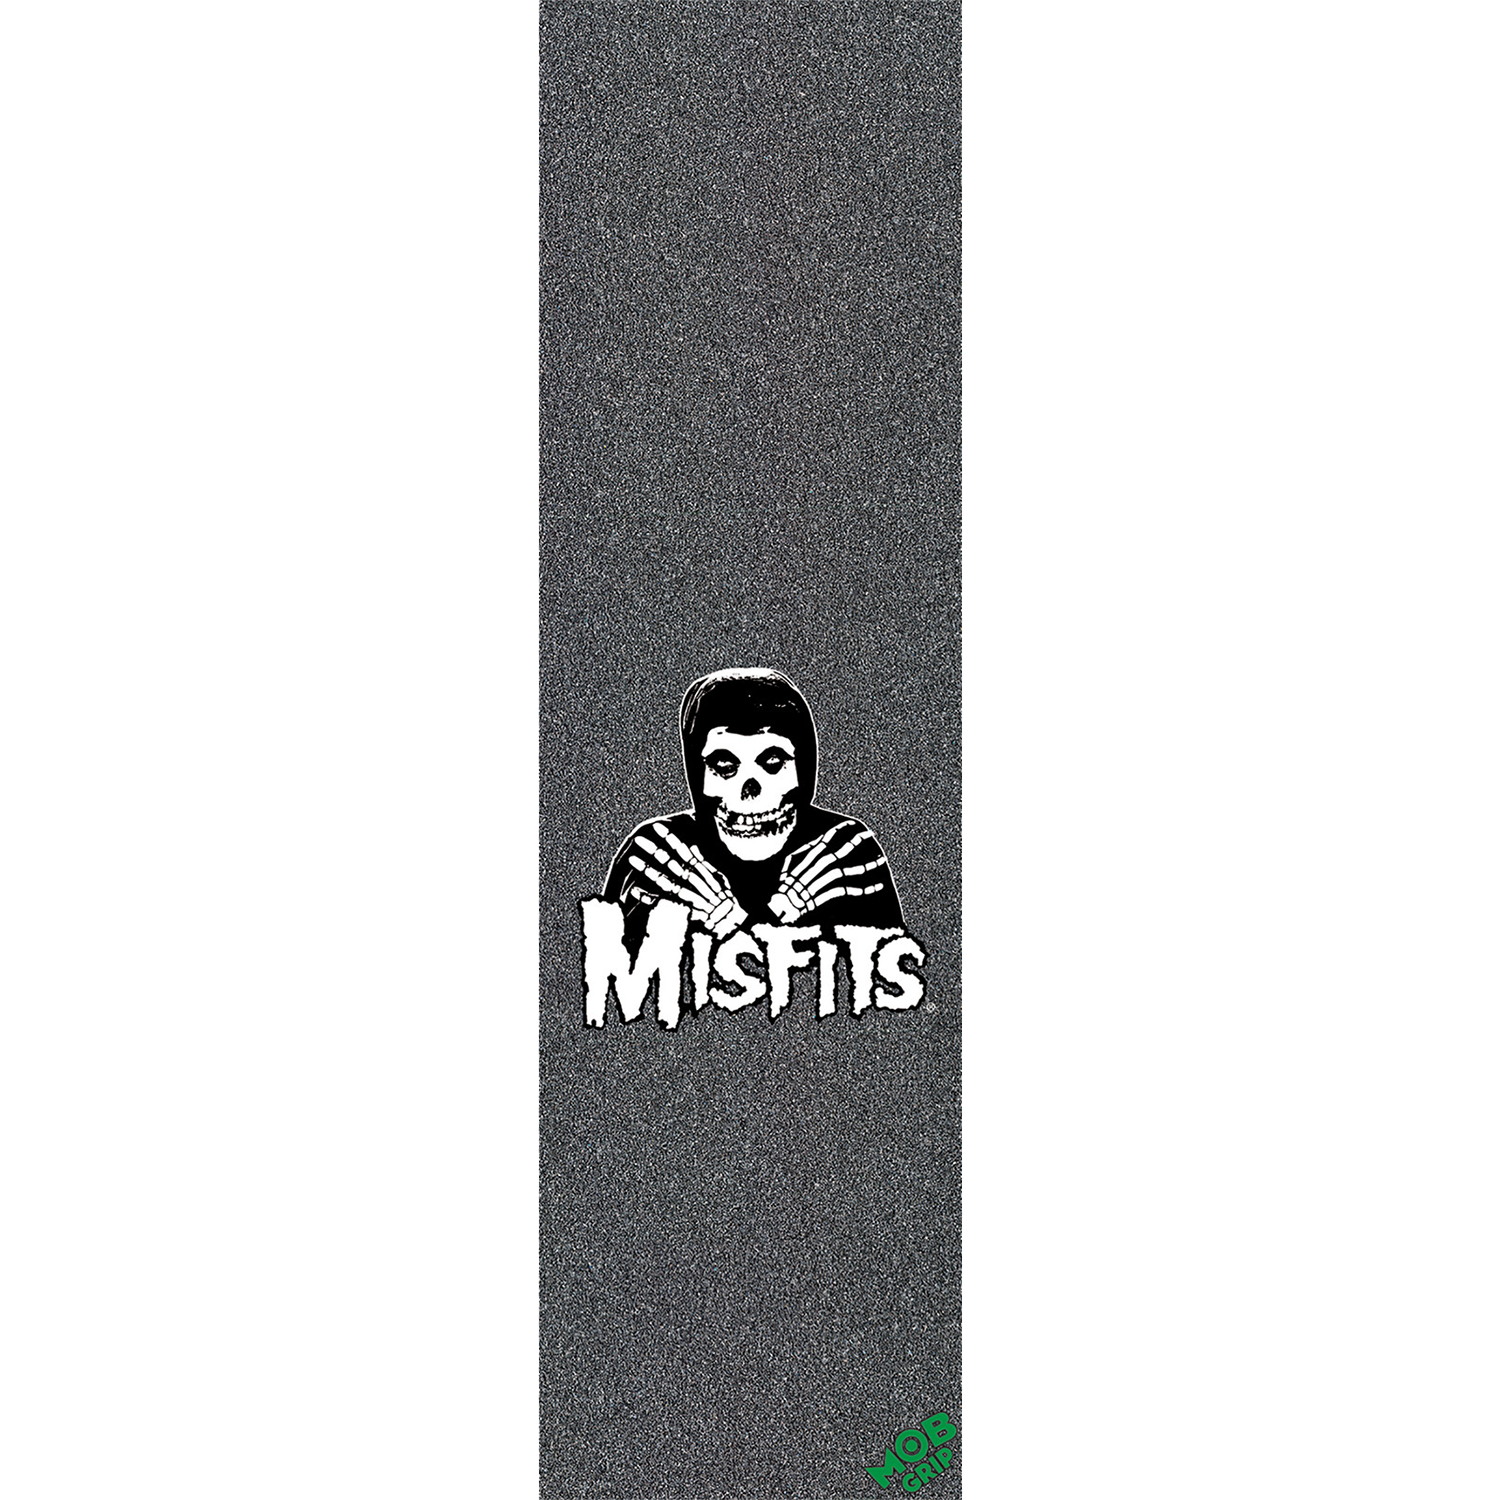 MOB MISFITS CROSSED HANDS GRIP 9x33 1sheet.